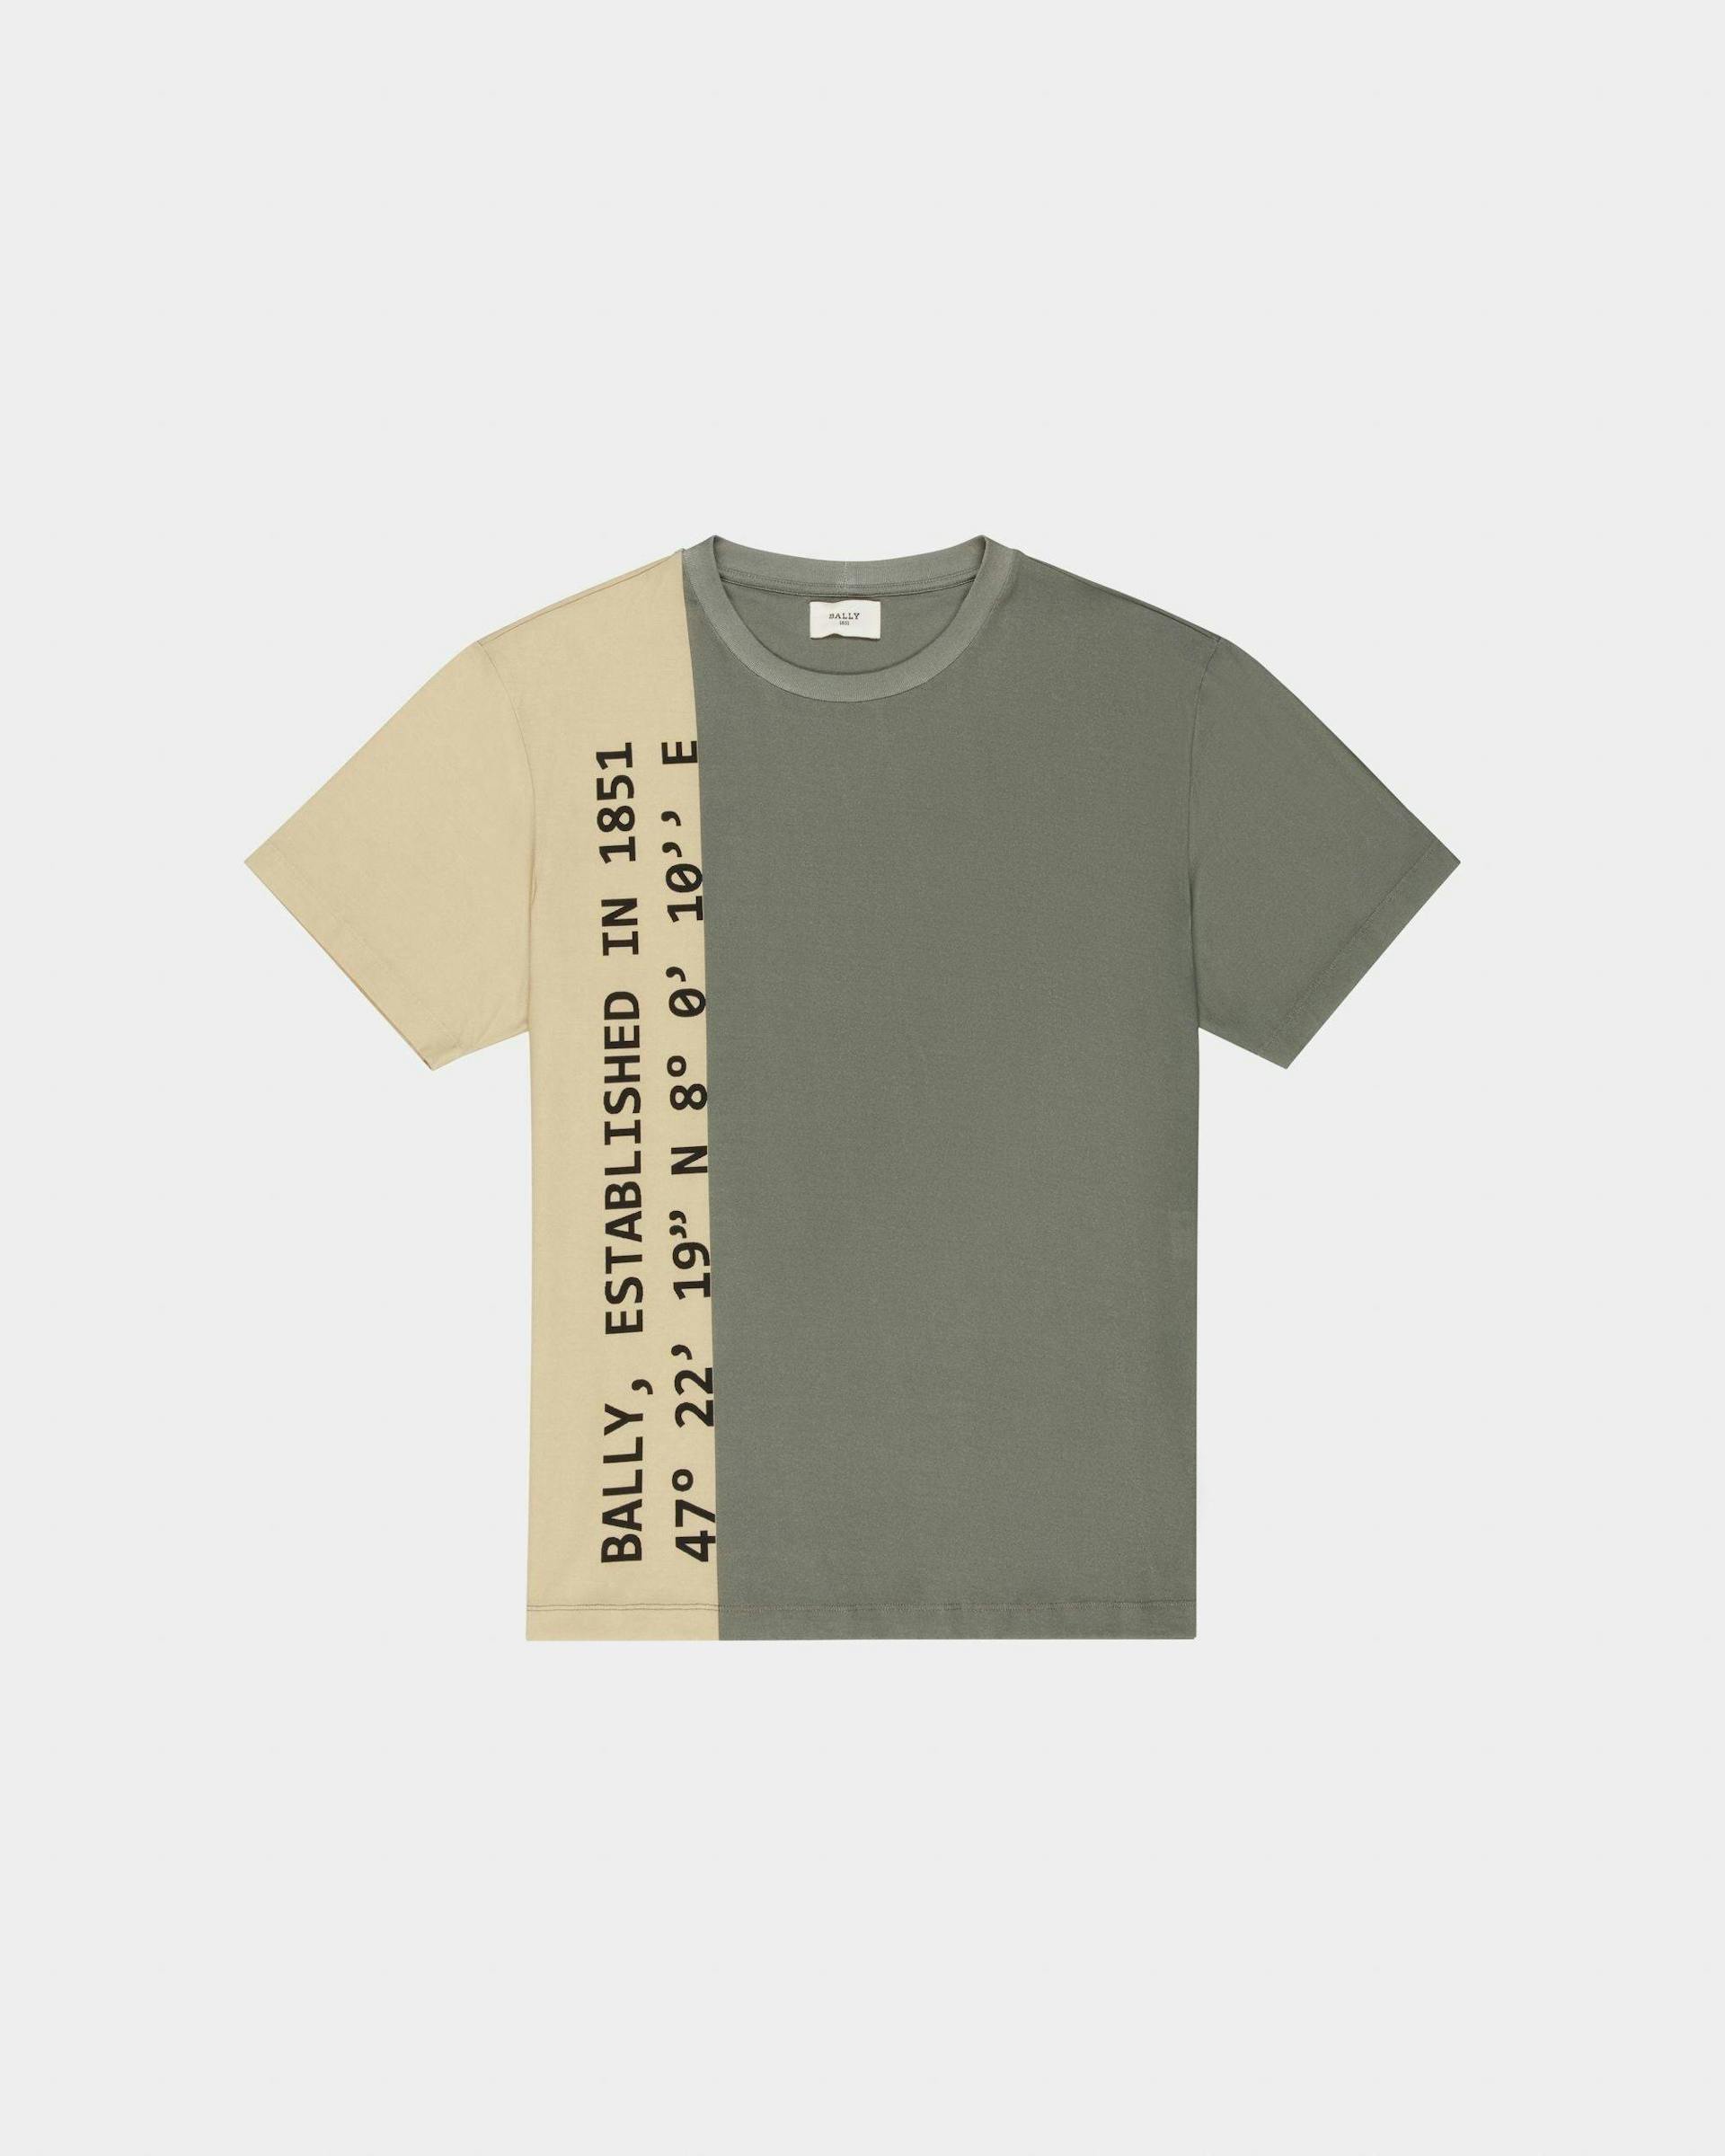 T-Shirt Aus Bio-Baumwolle In Beige Und Grün - Herren - Bally - 01